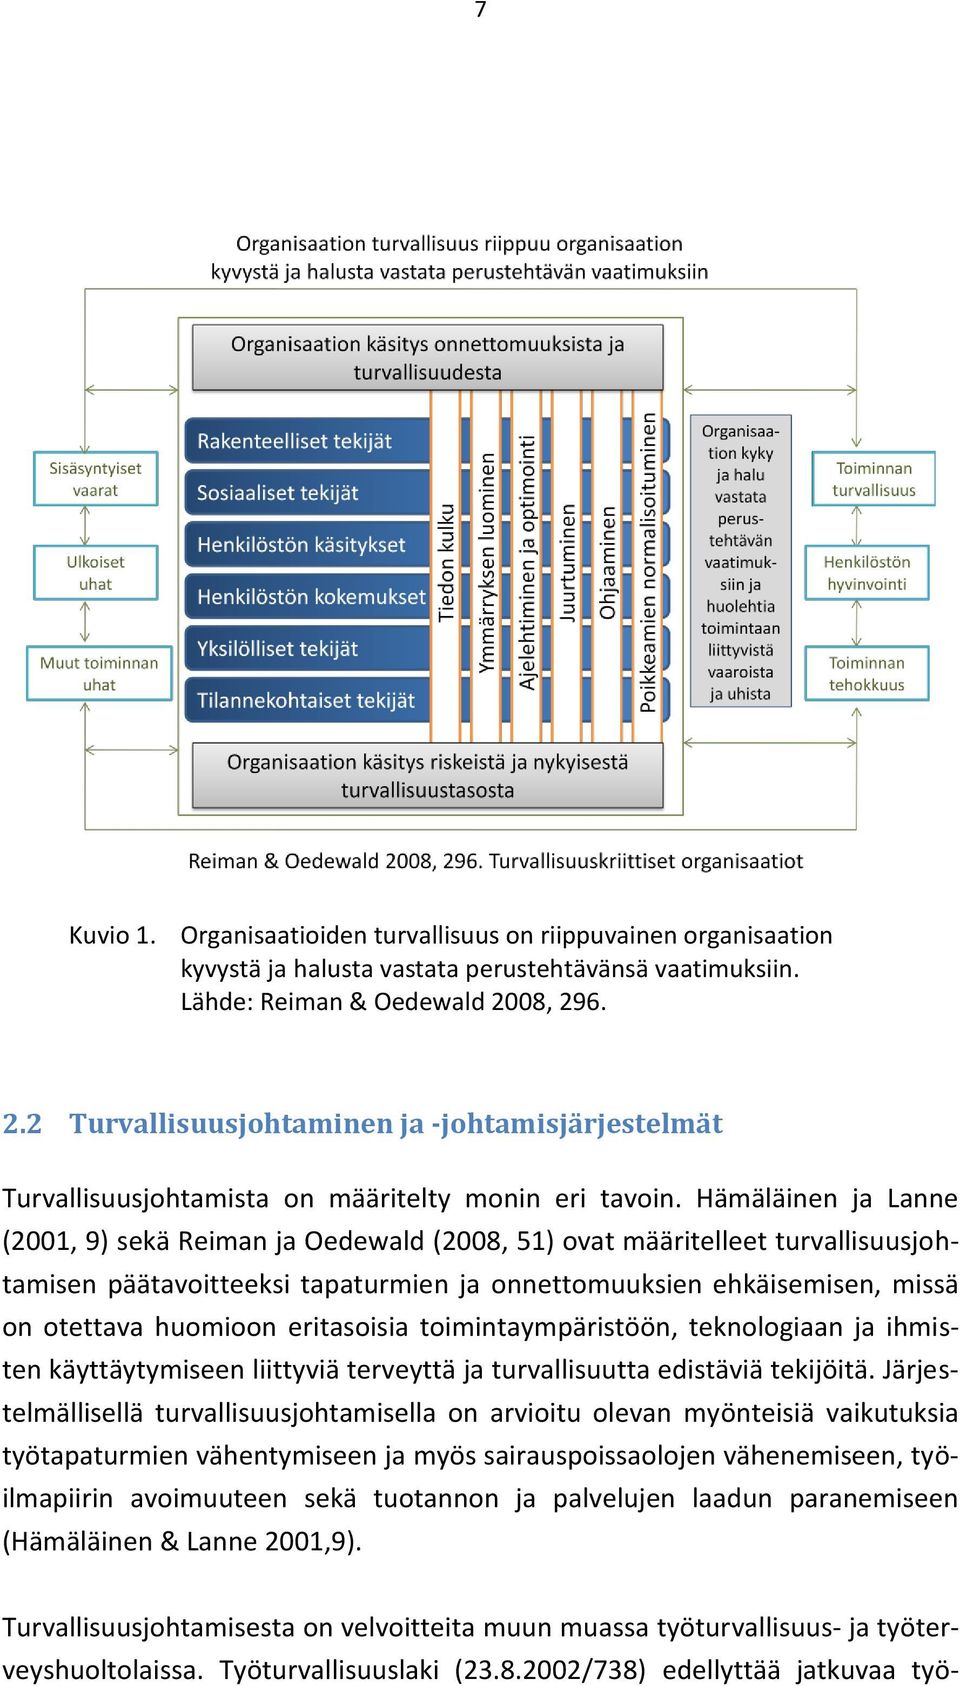 Hämäläinen ja Lanne (2001, 9) sekä Reiman ja Oedewald (2008, 51) ovat määritelleet turvallisuusjohtamisen päätavoitteeksi tapaturmien ja onnettomuuksien ehkäisemisen, missä on otettava huomioon